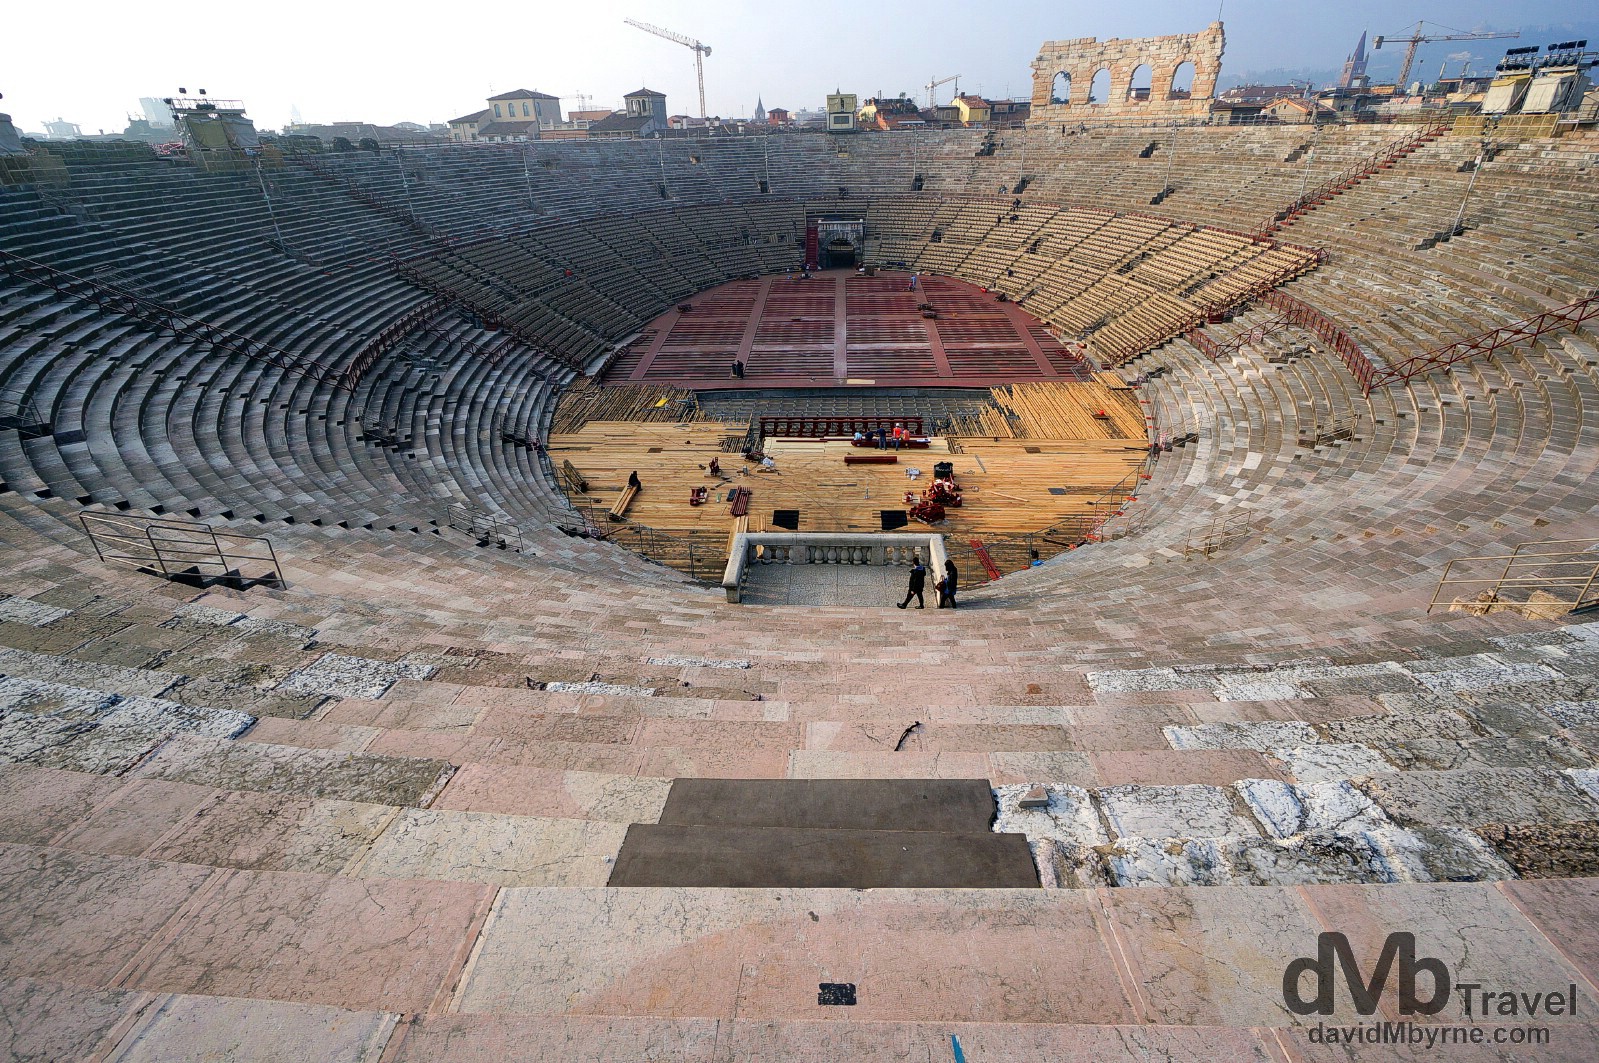 Arena di Verona in Verona, Italy. March 17, 2014.